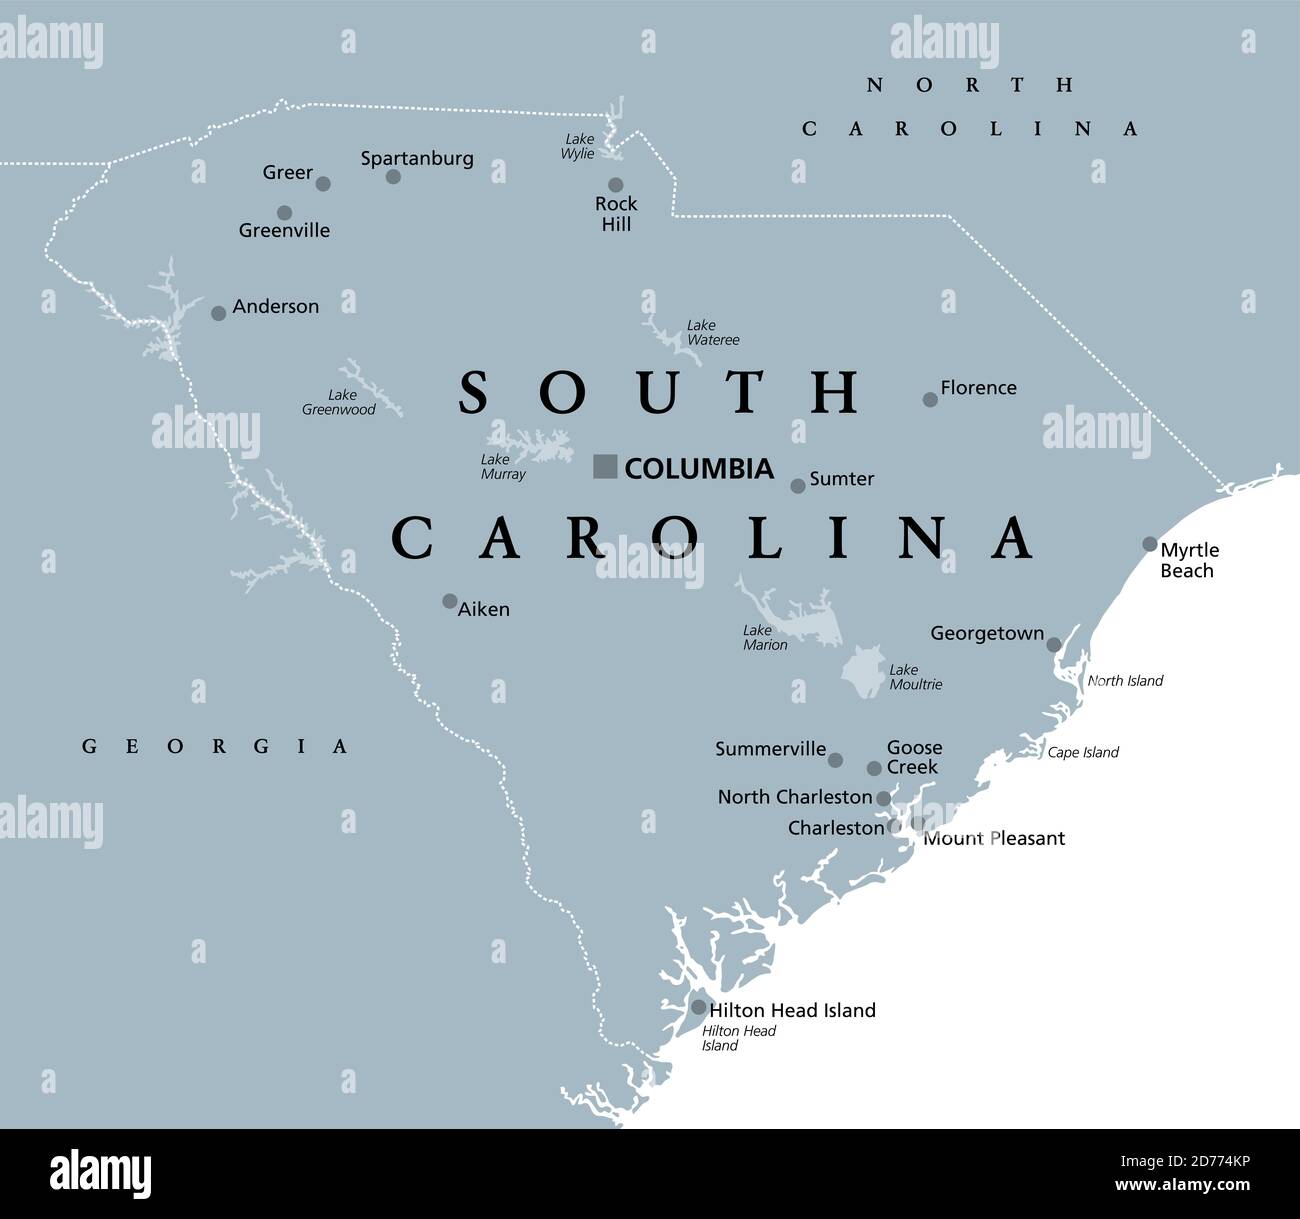 South Carolina, SC, mappa politica grigia, con la capitale Columbia, le città più grandi e i confini. Stato nella regione sud-orientale degli Stati Uniti. Foto Stock